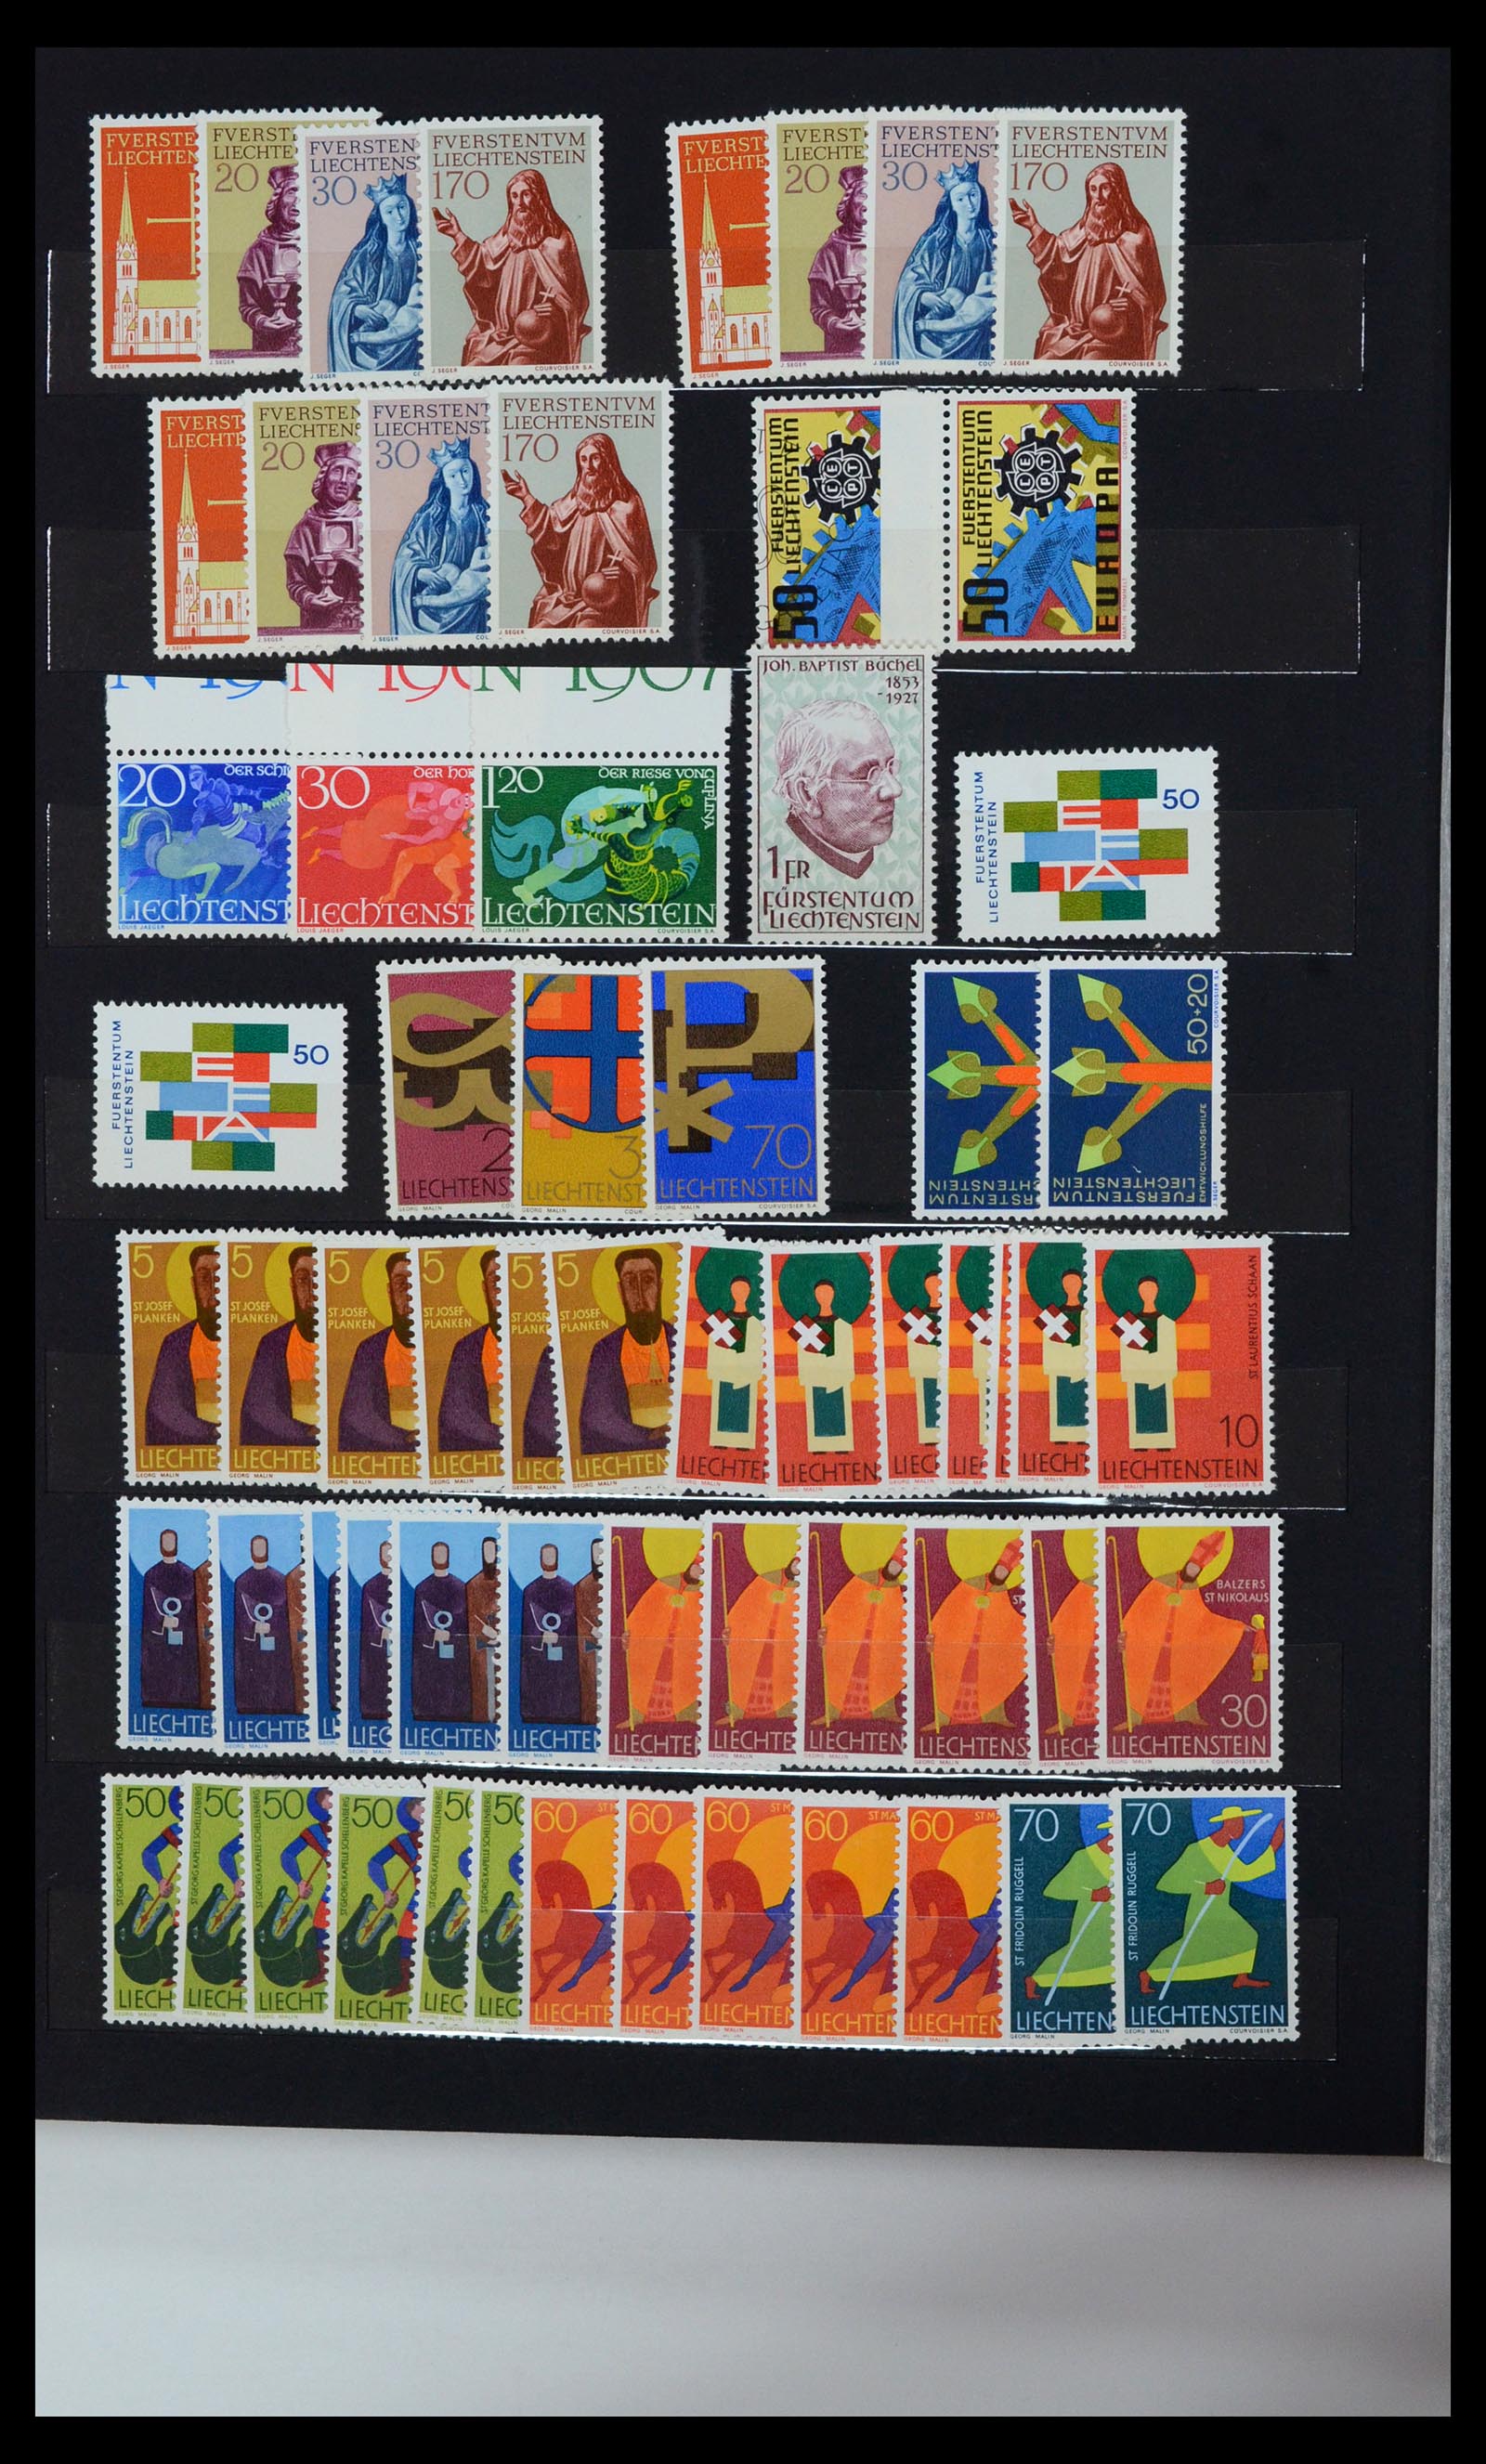 36697 010 - Stamp collection 36697 Liechtenstein 1912-1985.